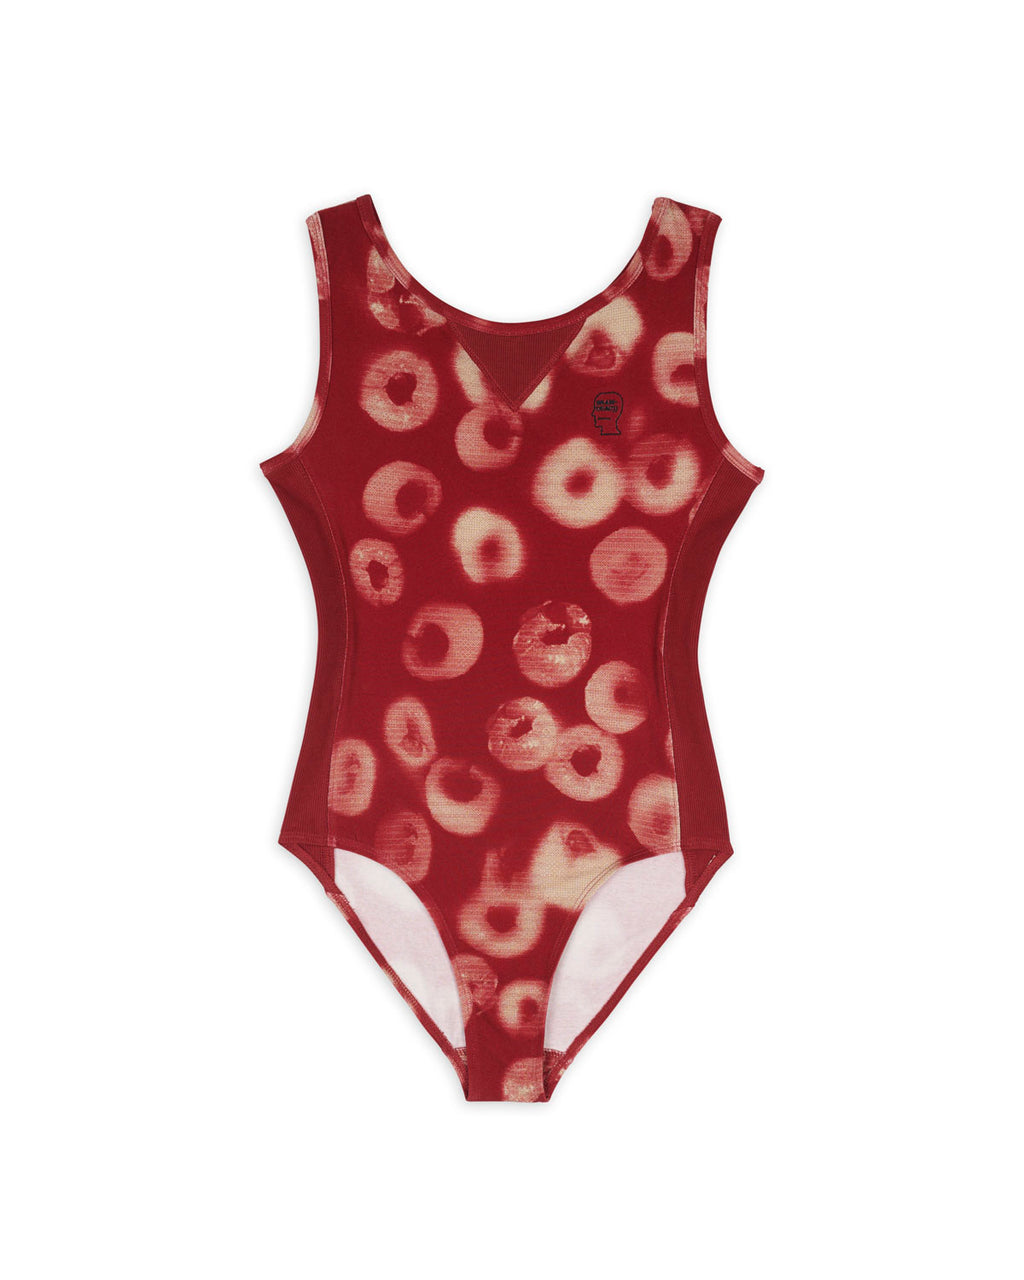 Sponge Dye Bodysuit - Red 1